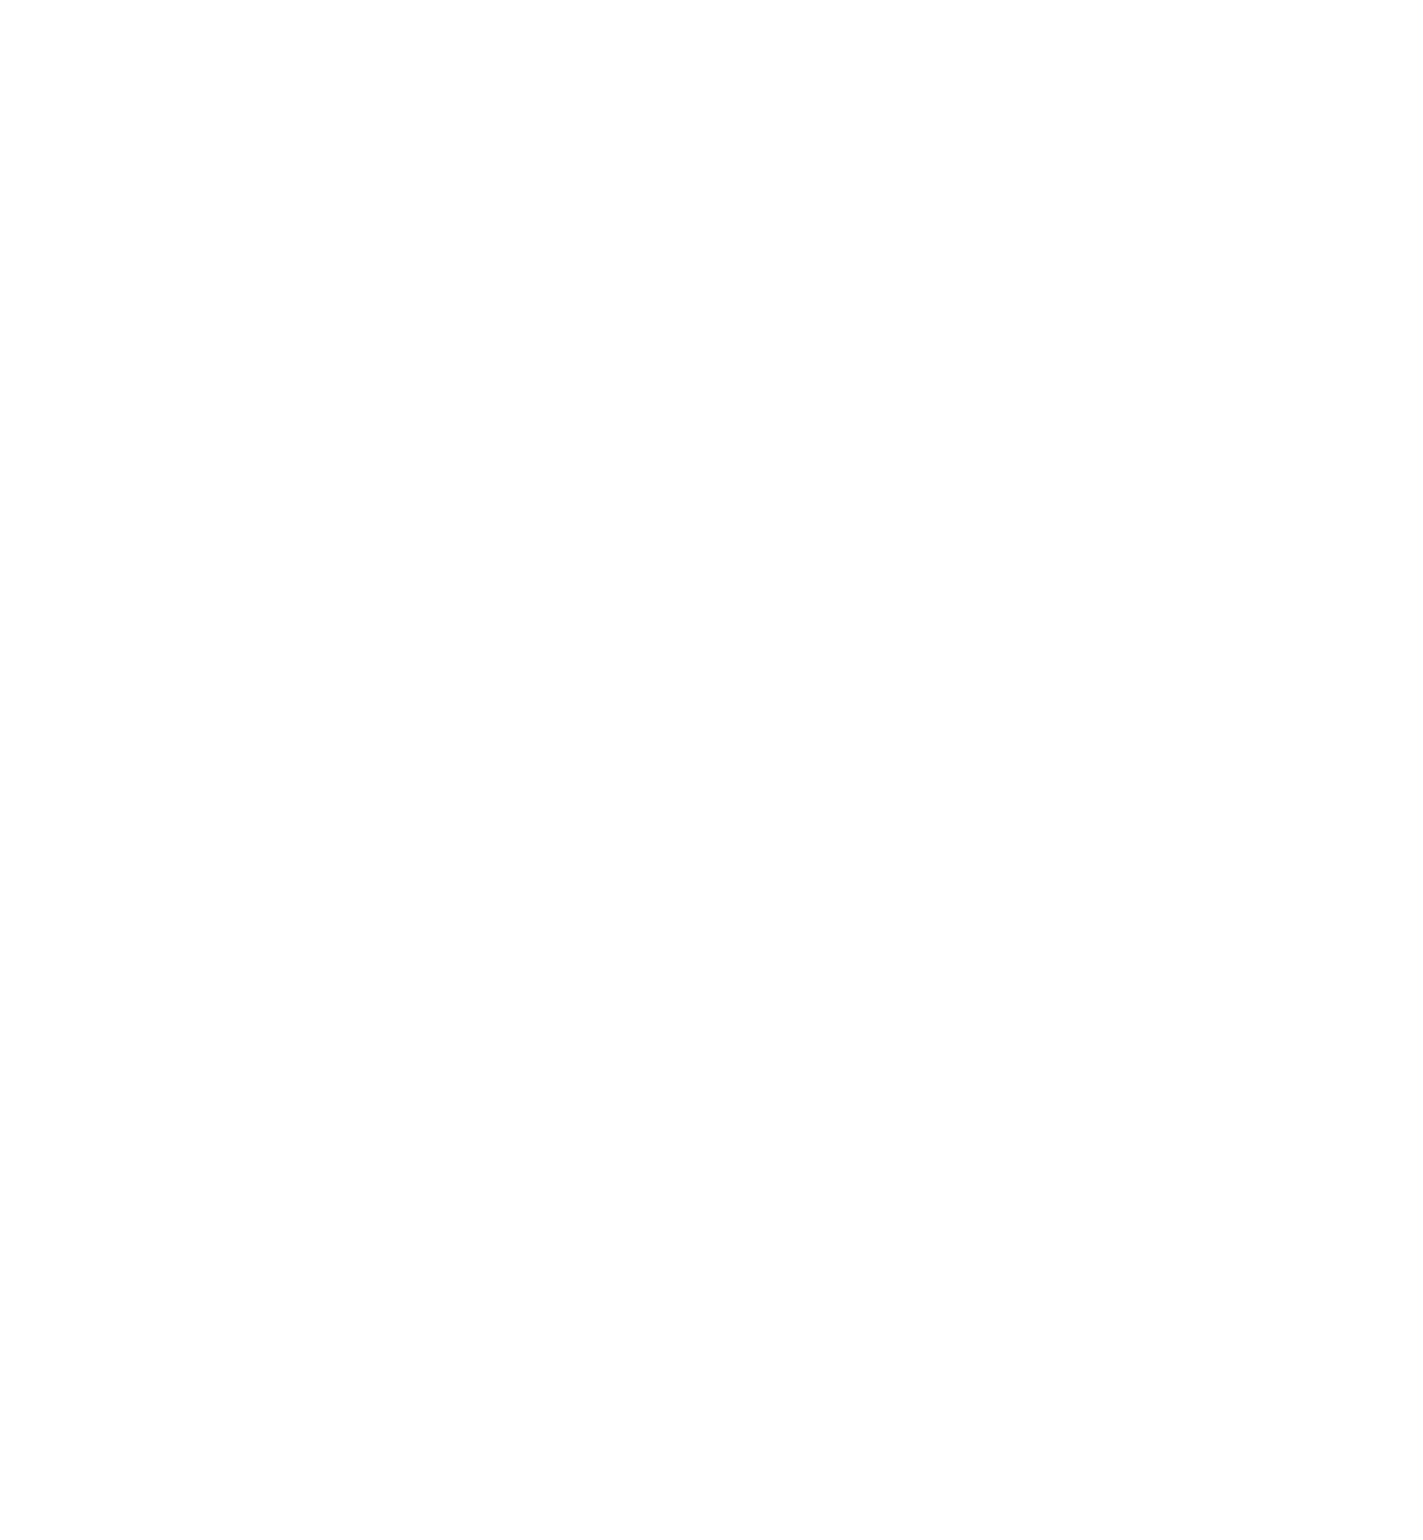 Cencora logo pour fonds sombres (PNG transparent)